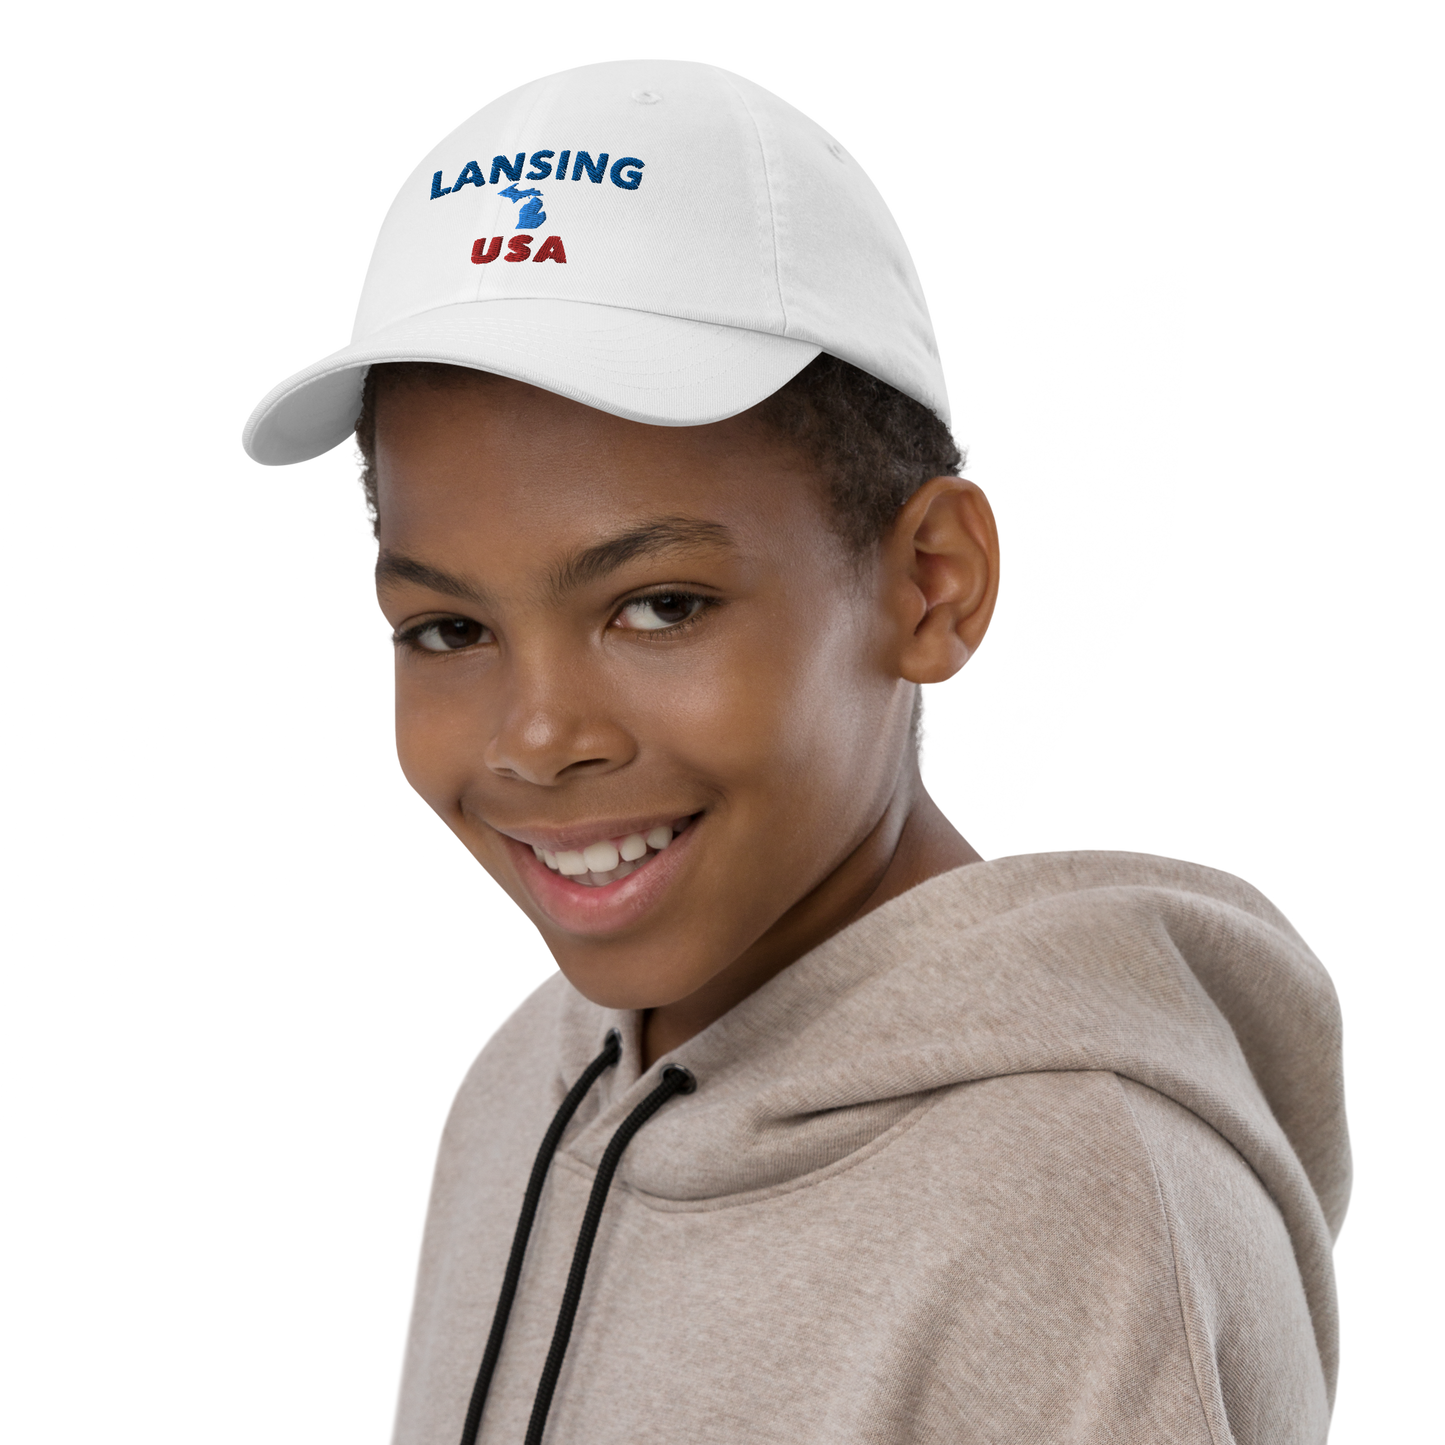 'Lansing USA' Youth Baseball Cap (w/ Michigan Outline)